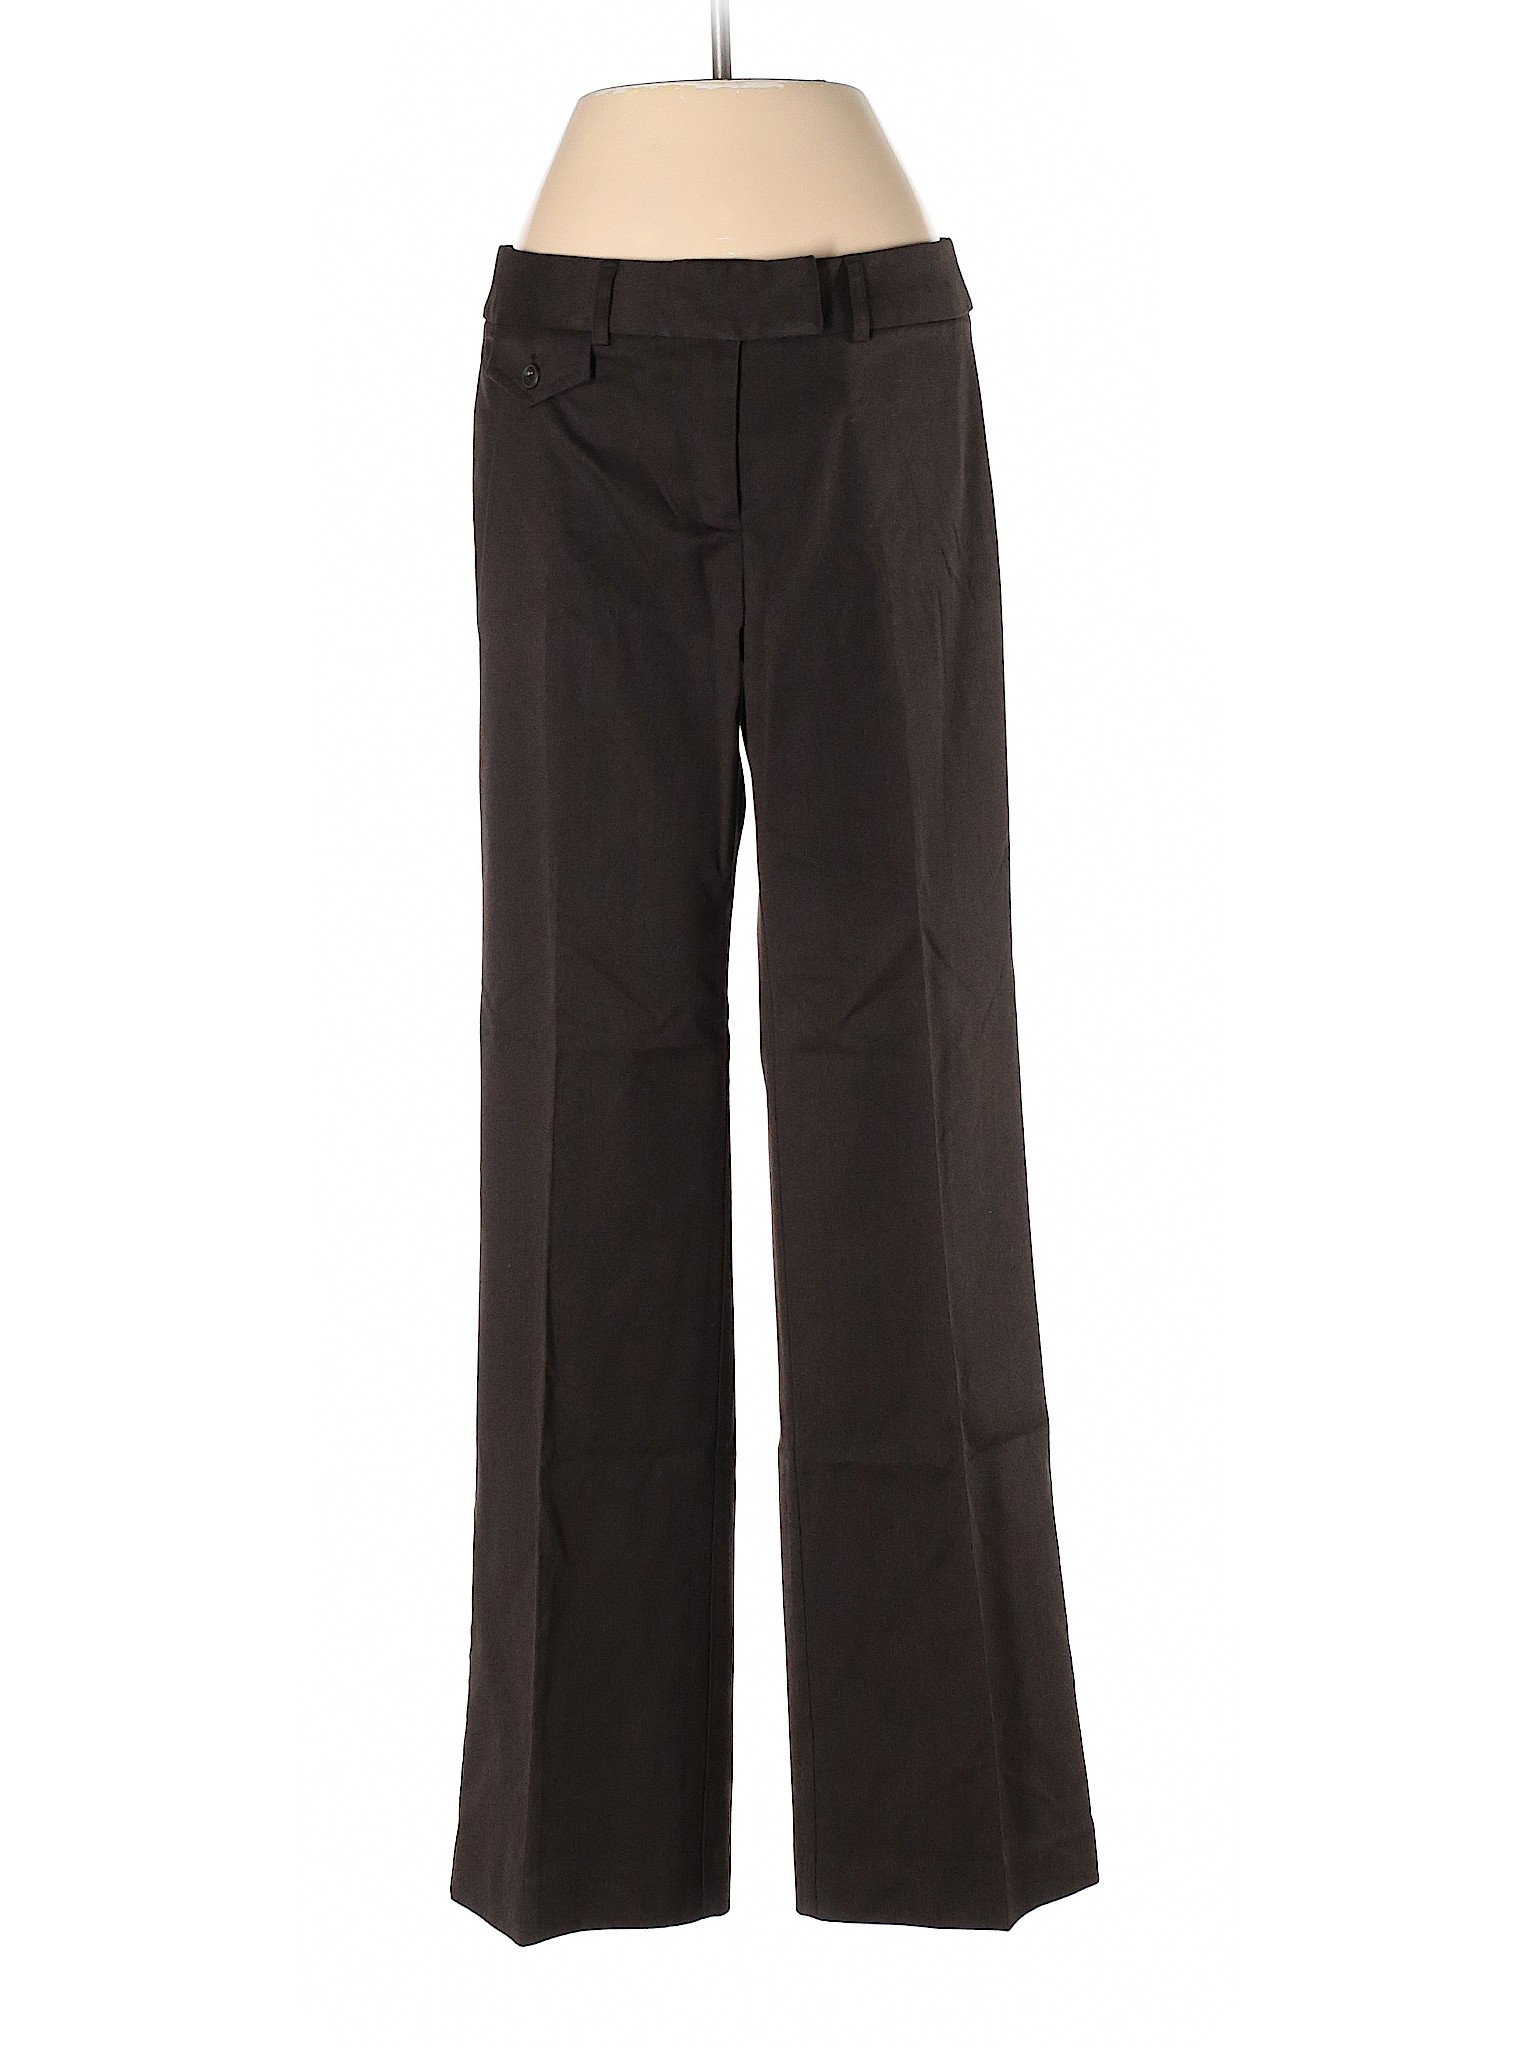 Geoffrey Beene Sport Women Black Dress Pants 4 | eBay